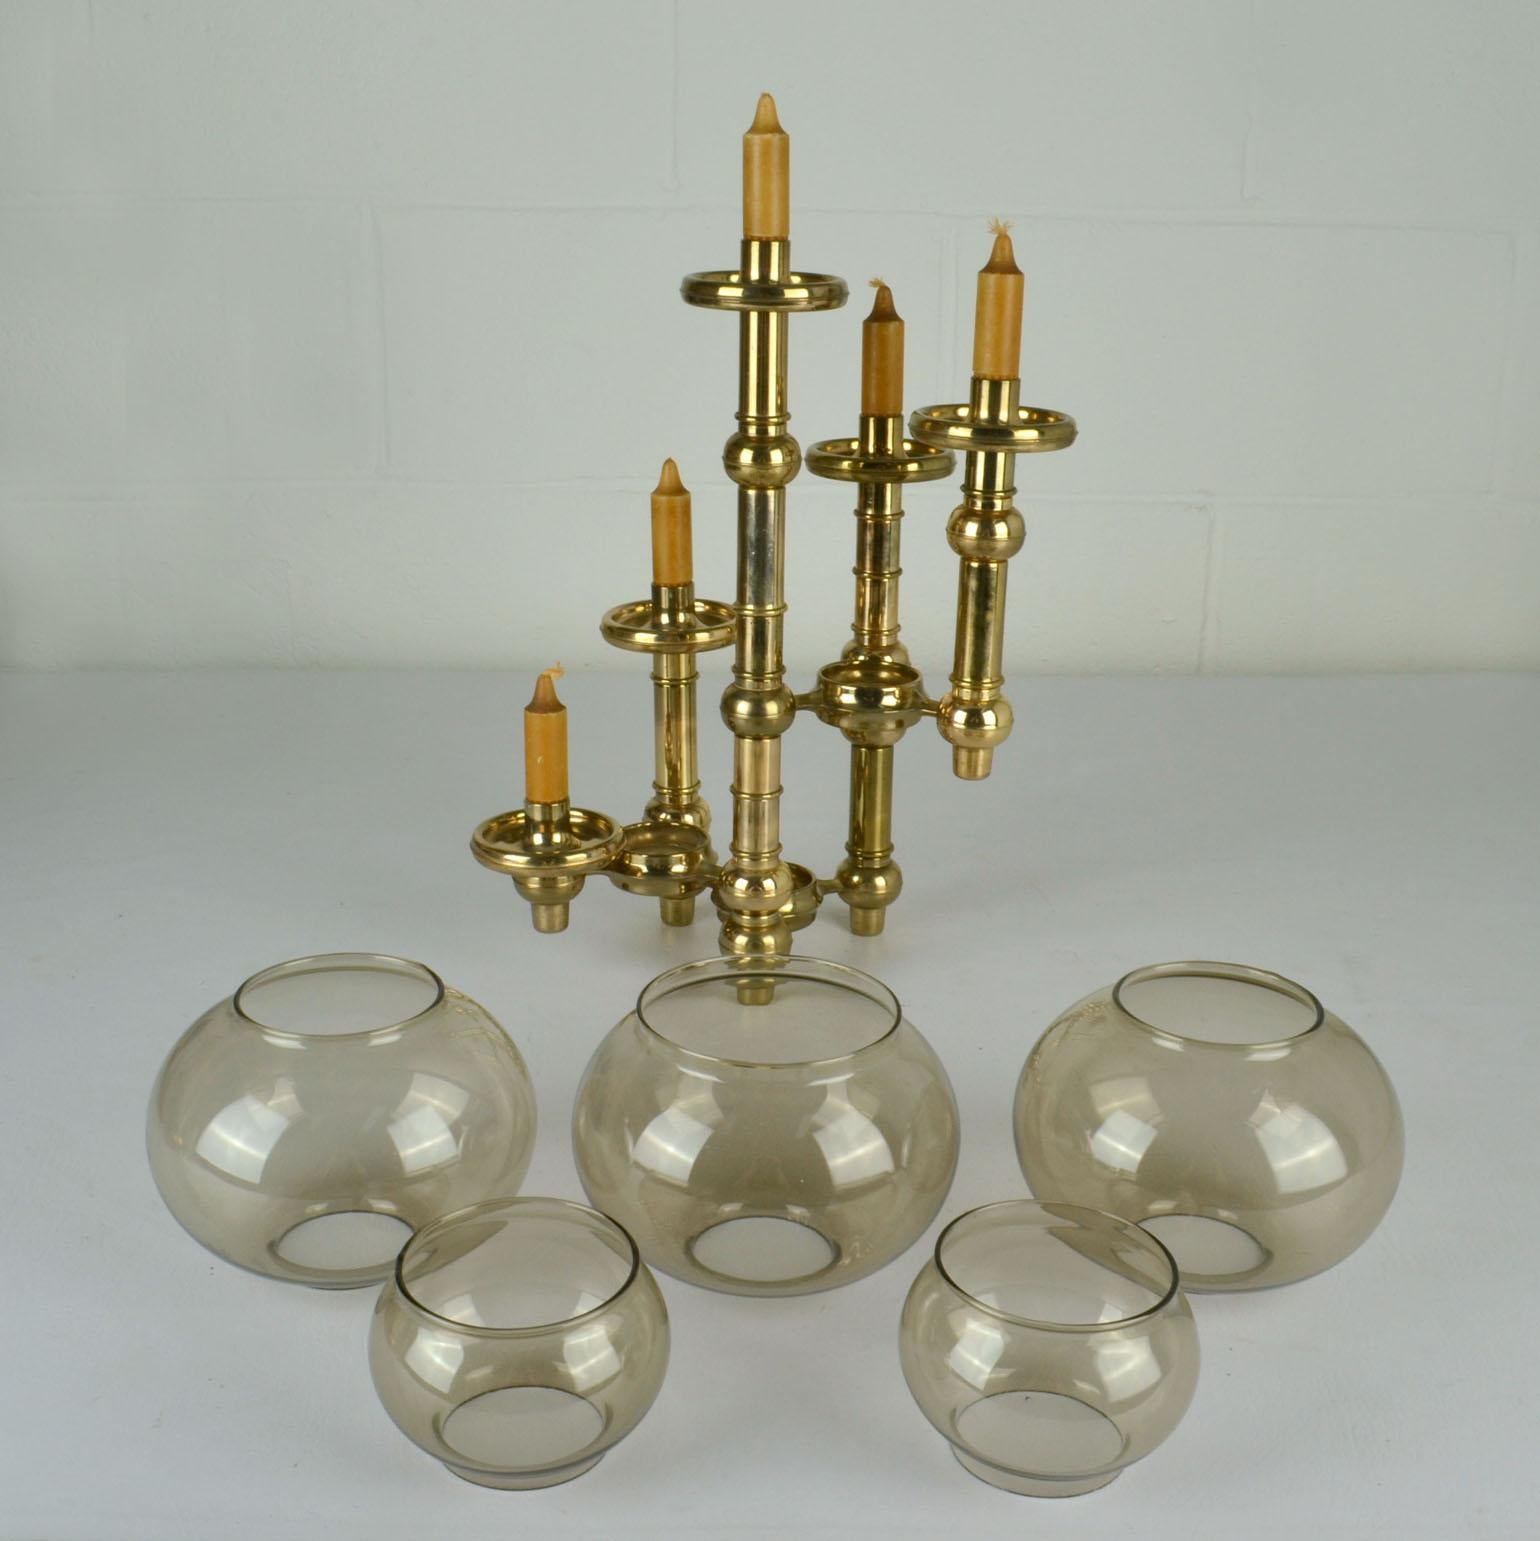 Scandinavian Modern Modular Brass Candelabra with Glass Shades For Sale 9